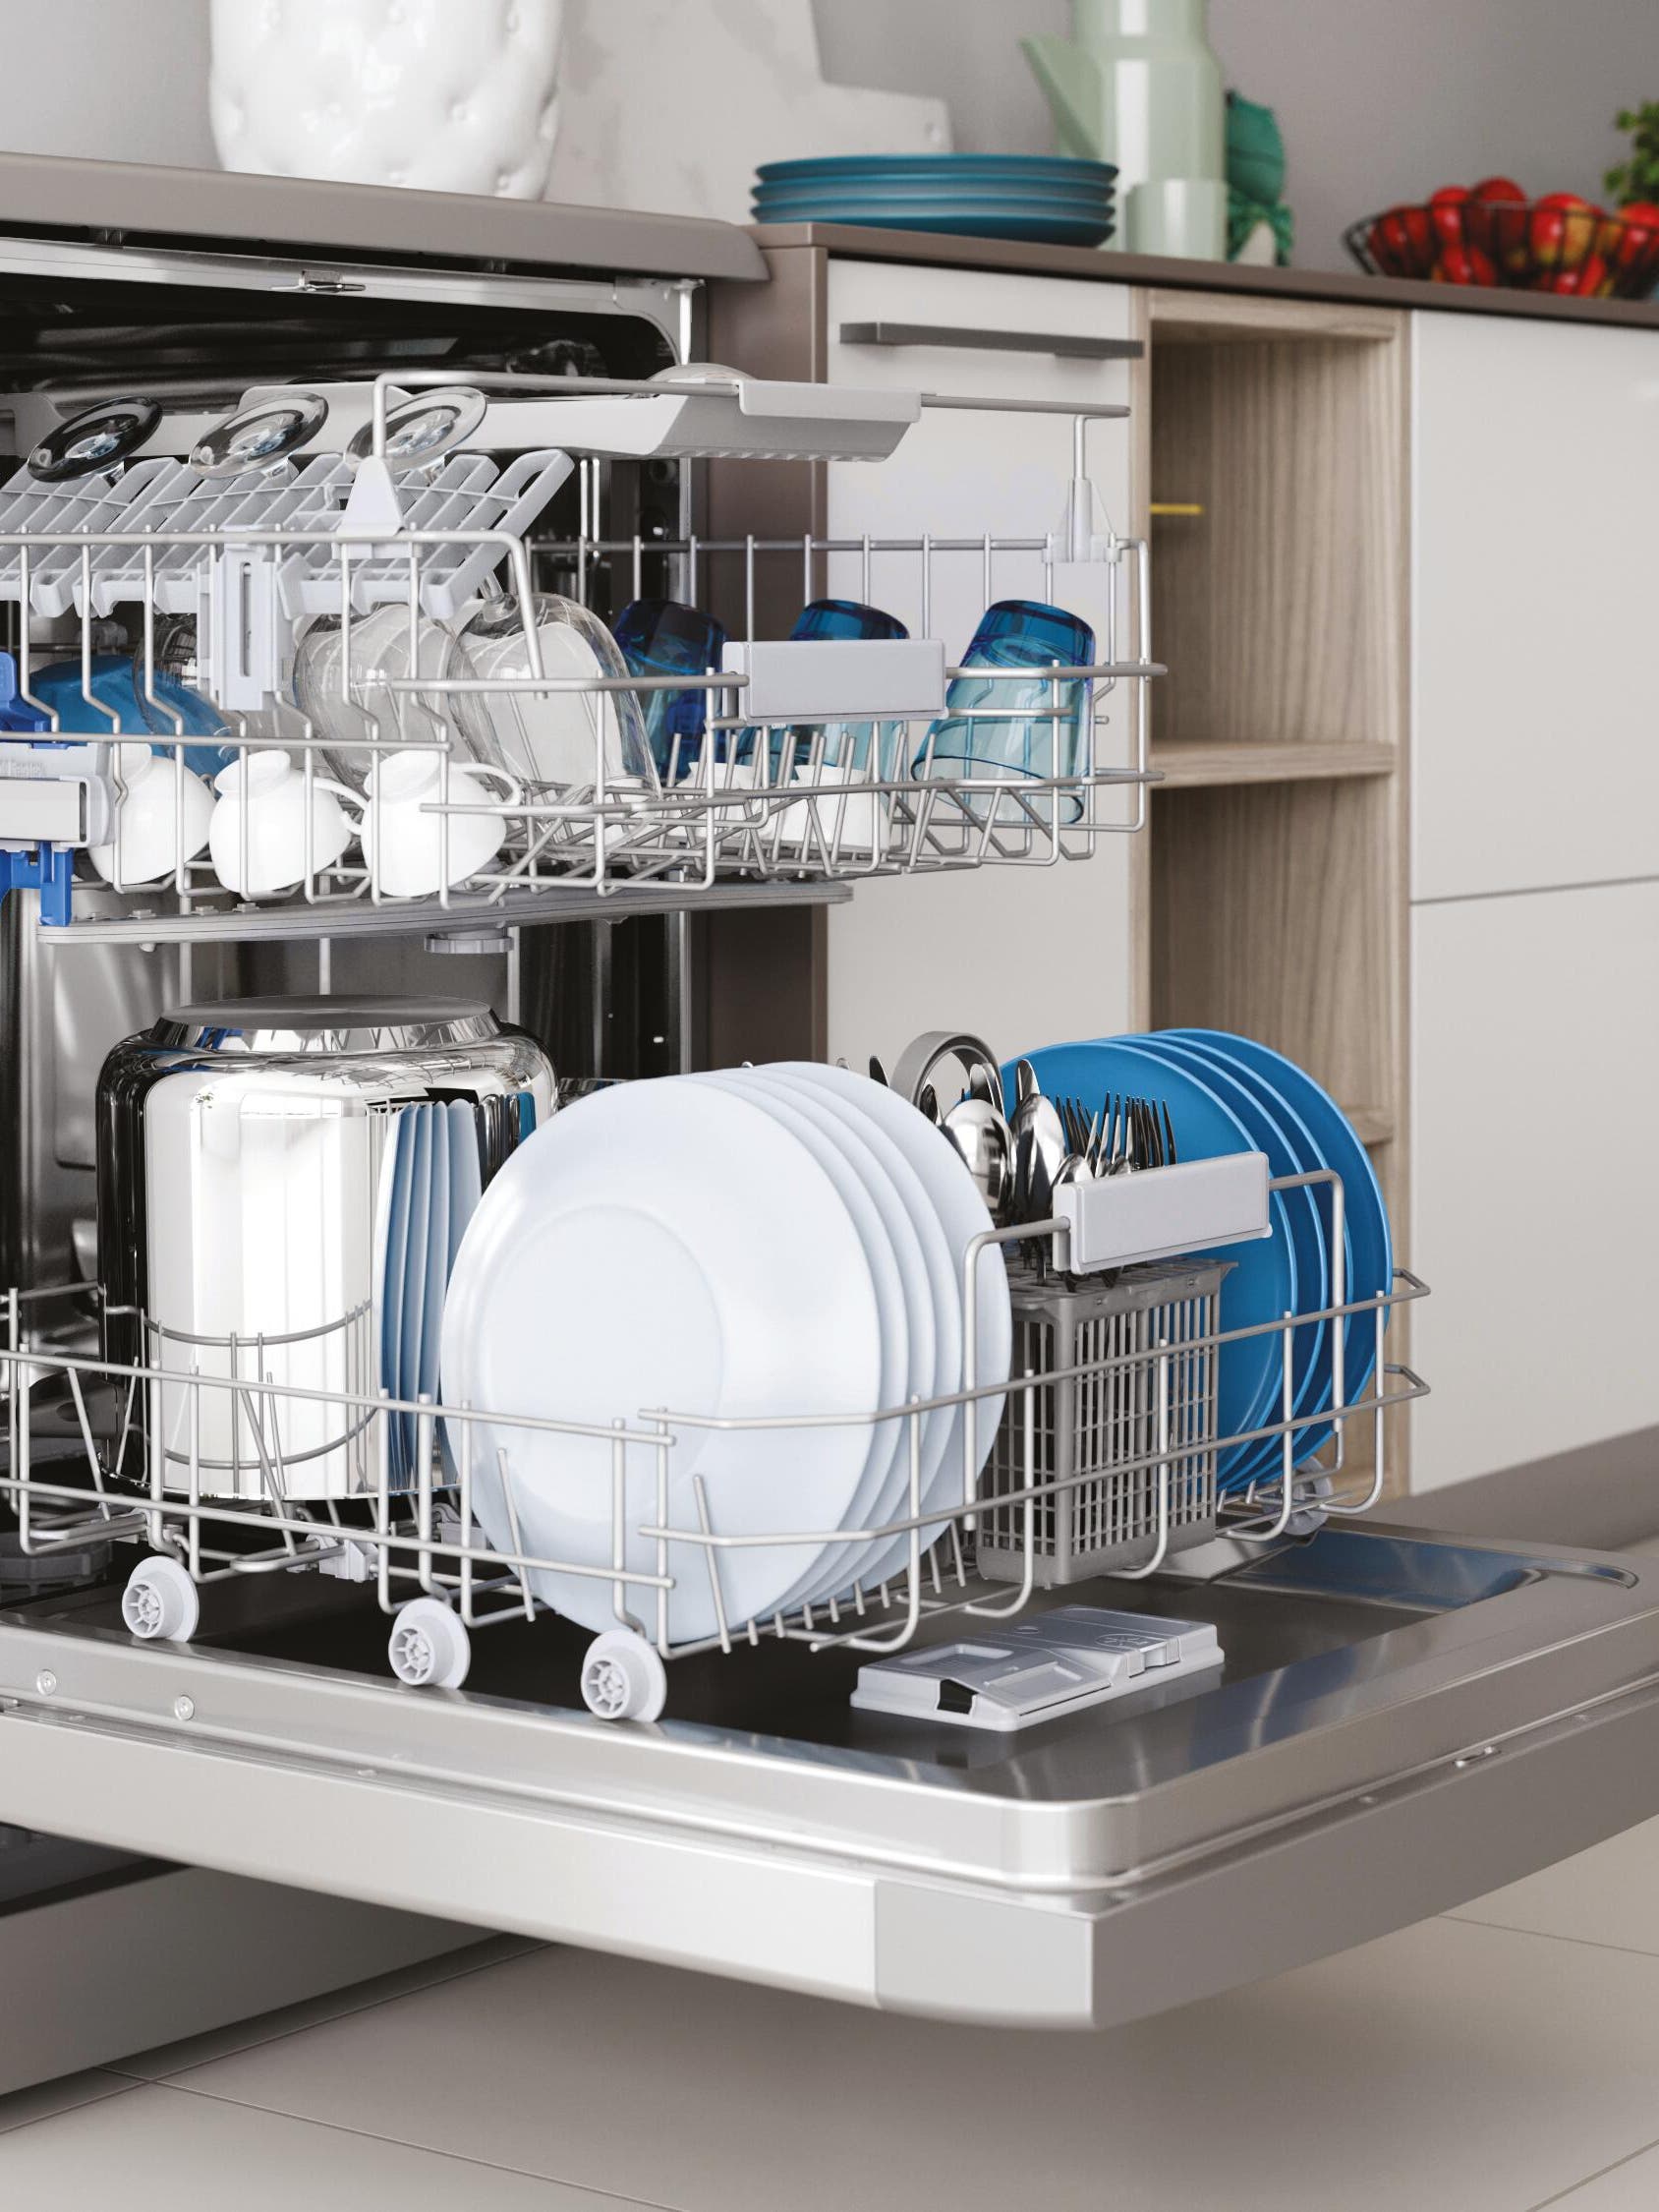 Lavaplatos: ¿cómo elegir el lavavajillas ideal para tu hogar?